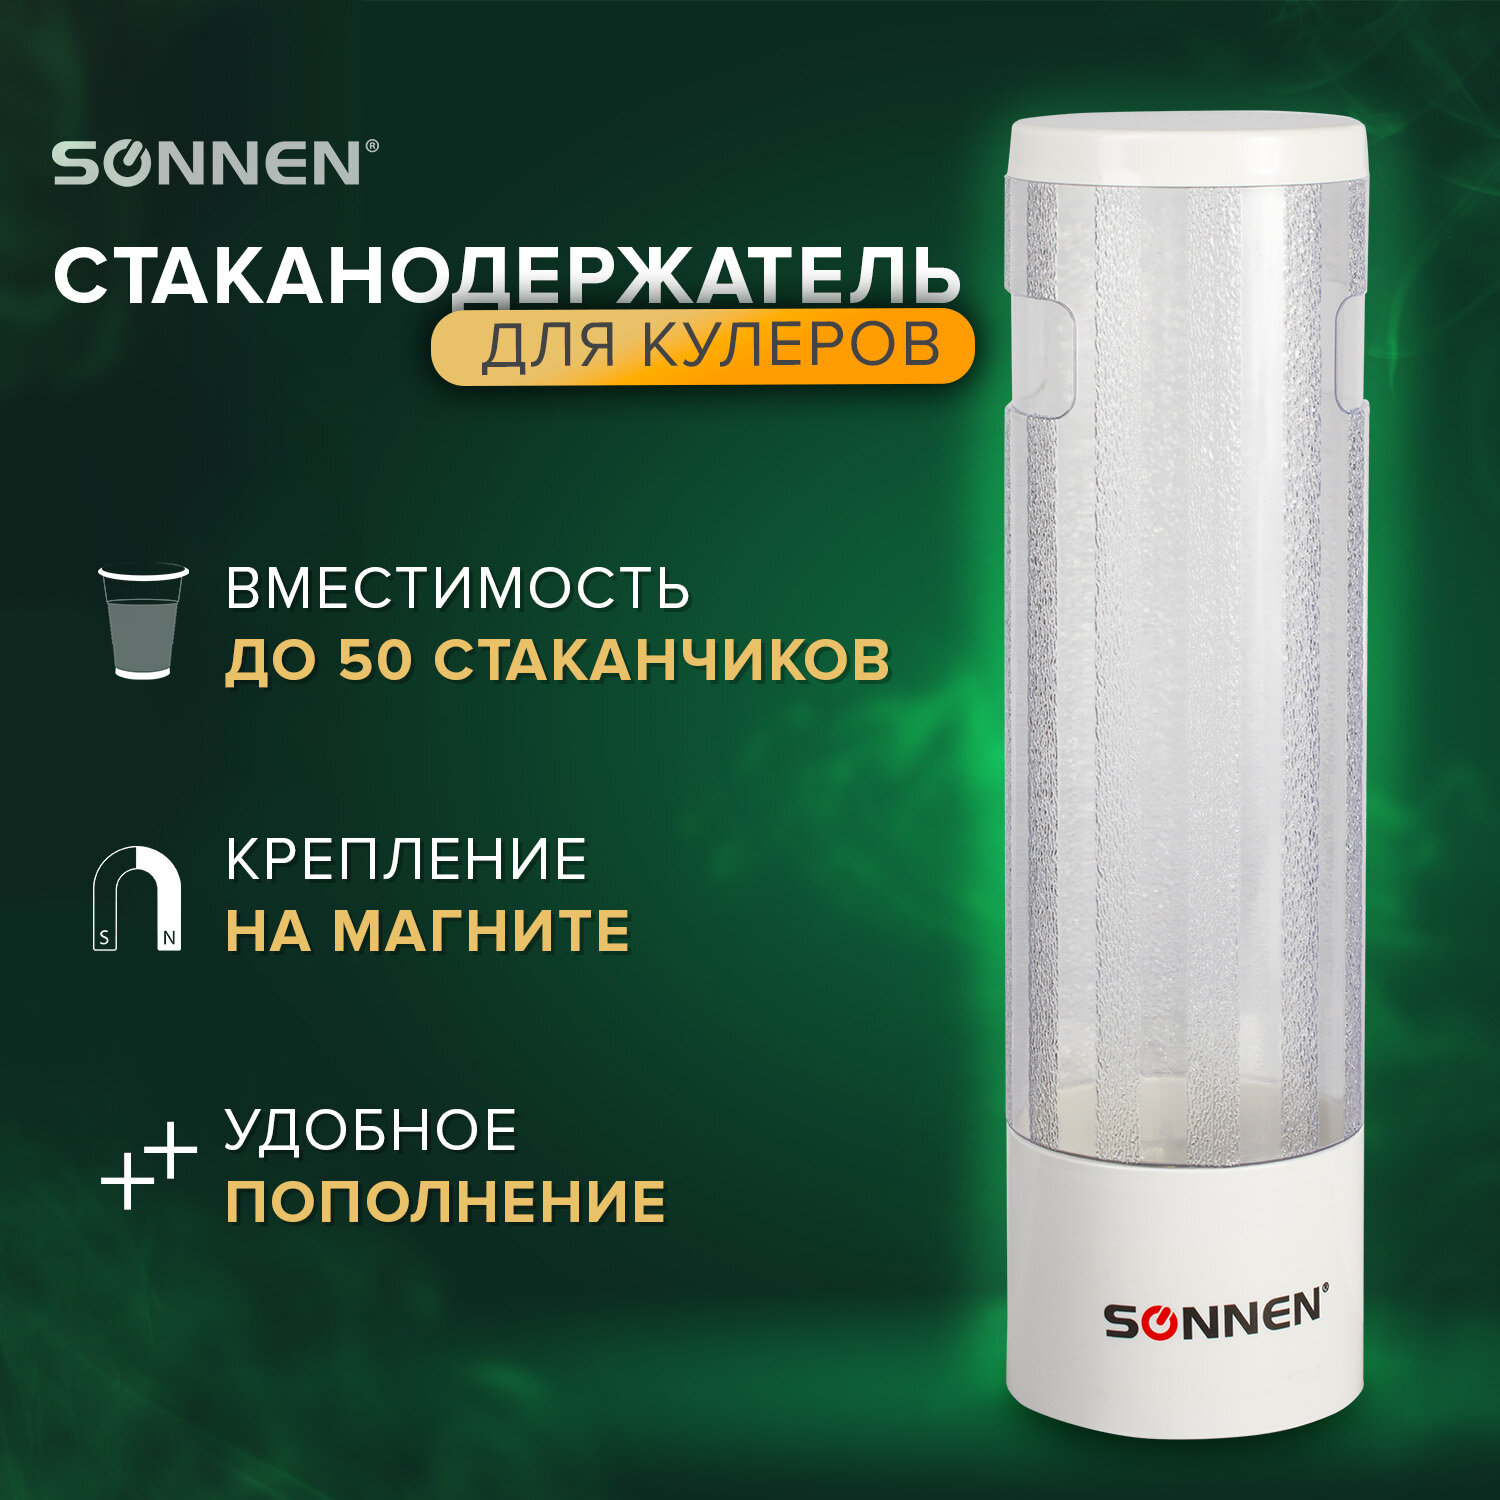 Sonnen Стаканодержатель SONNEN CH-33М, 50 стаканов, на магните, белый, 452424